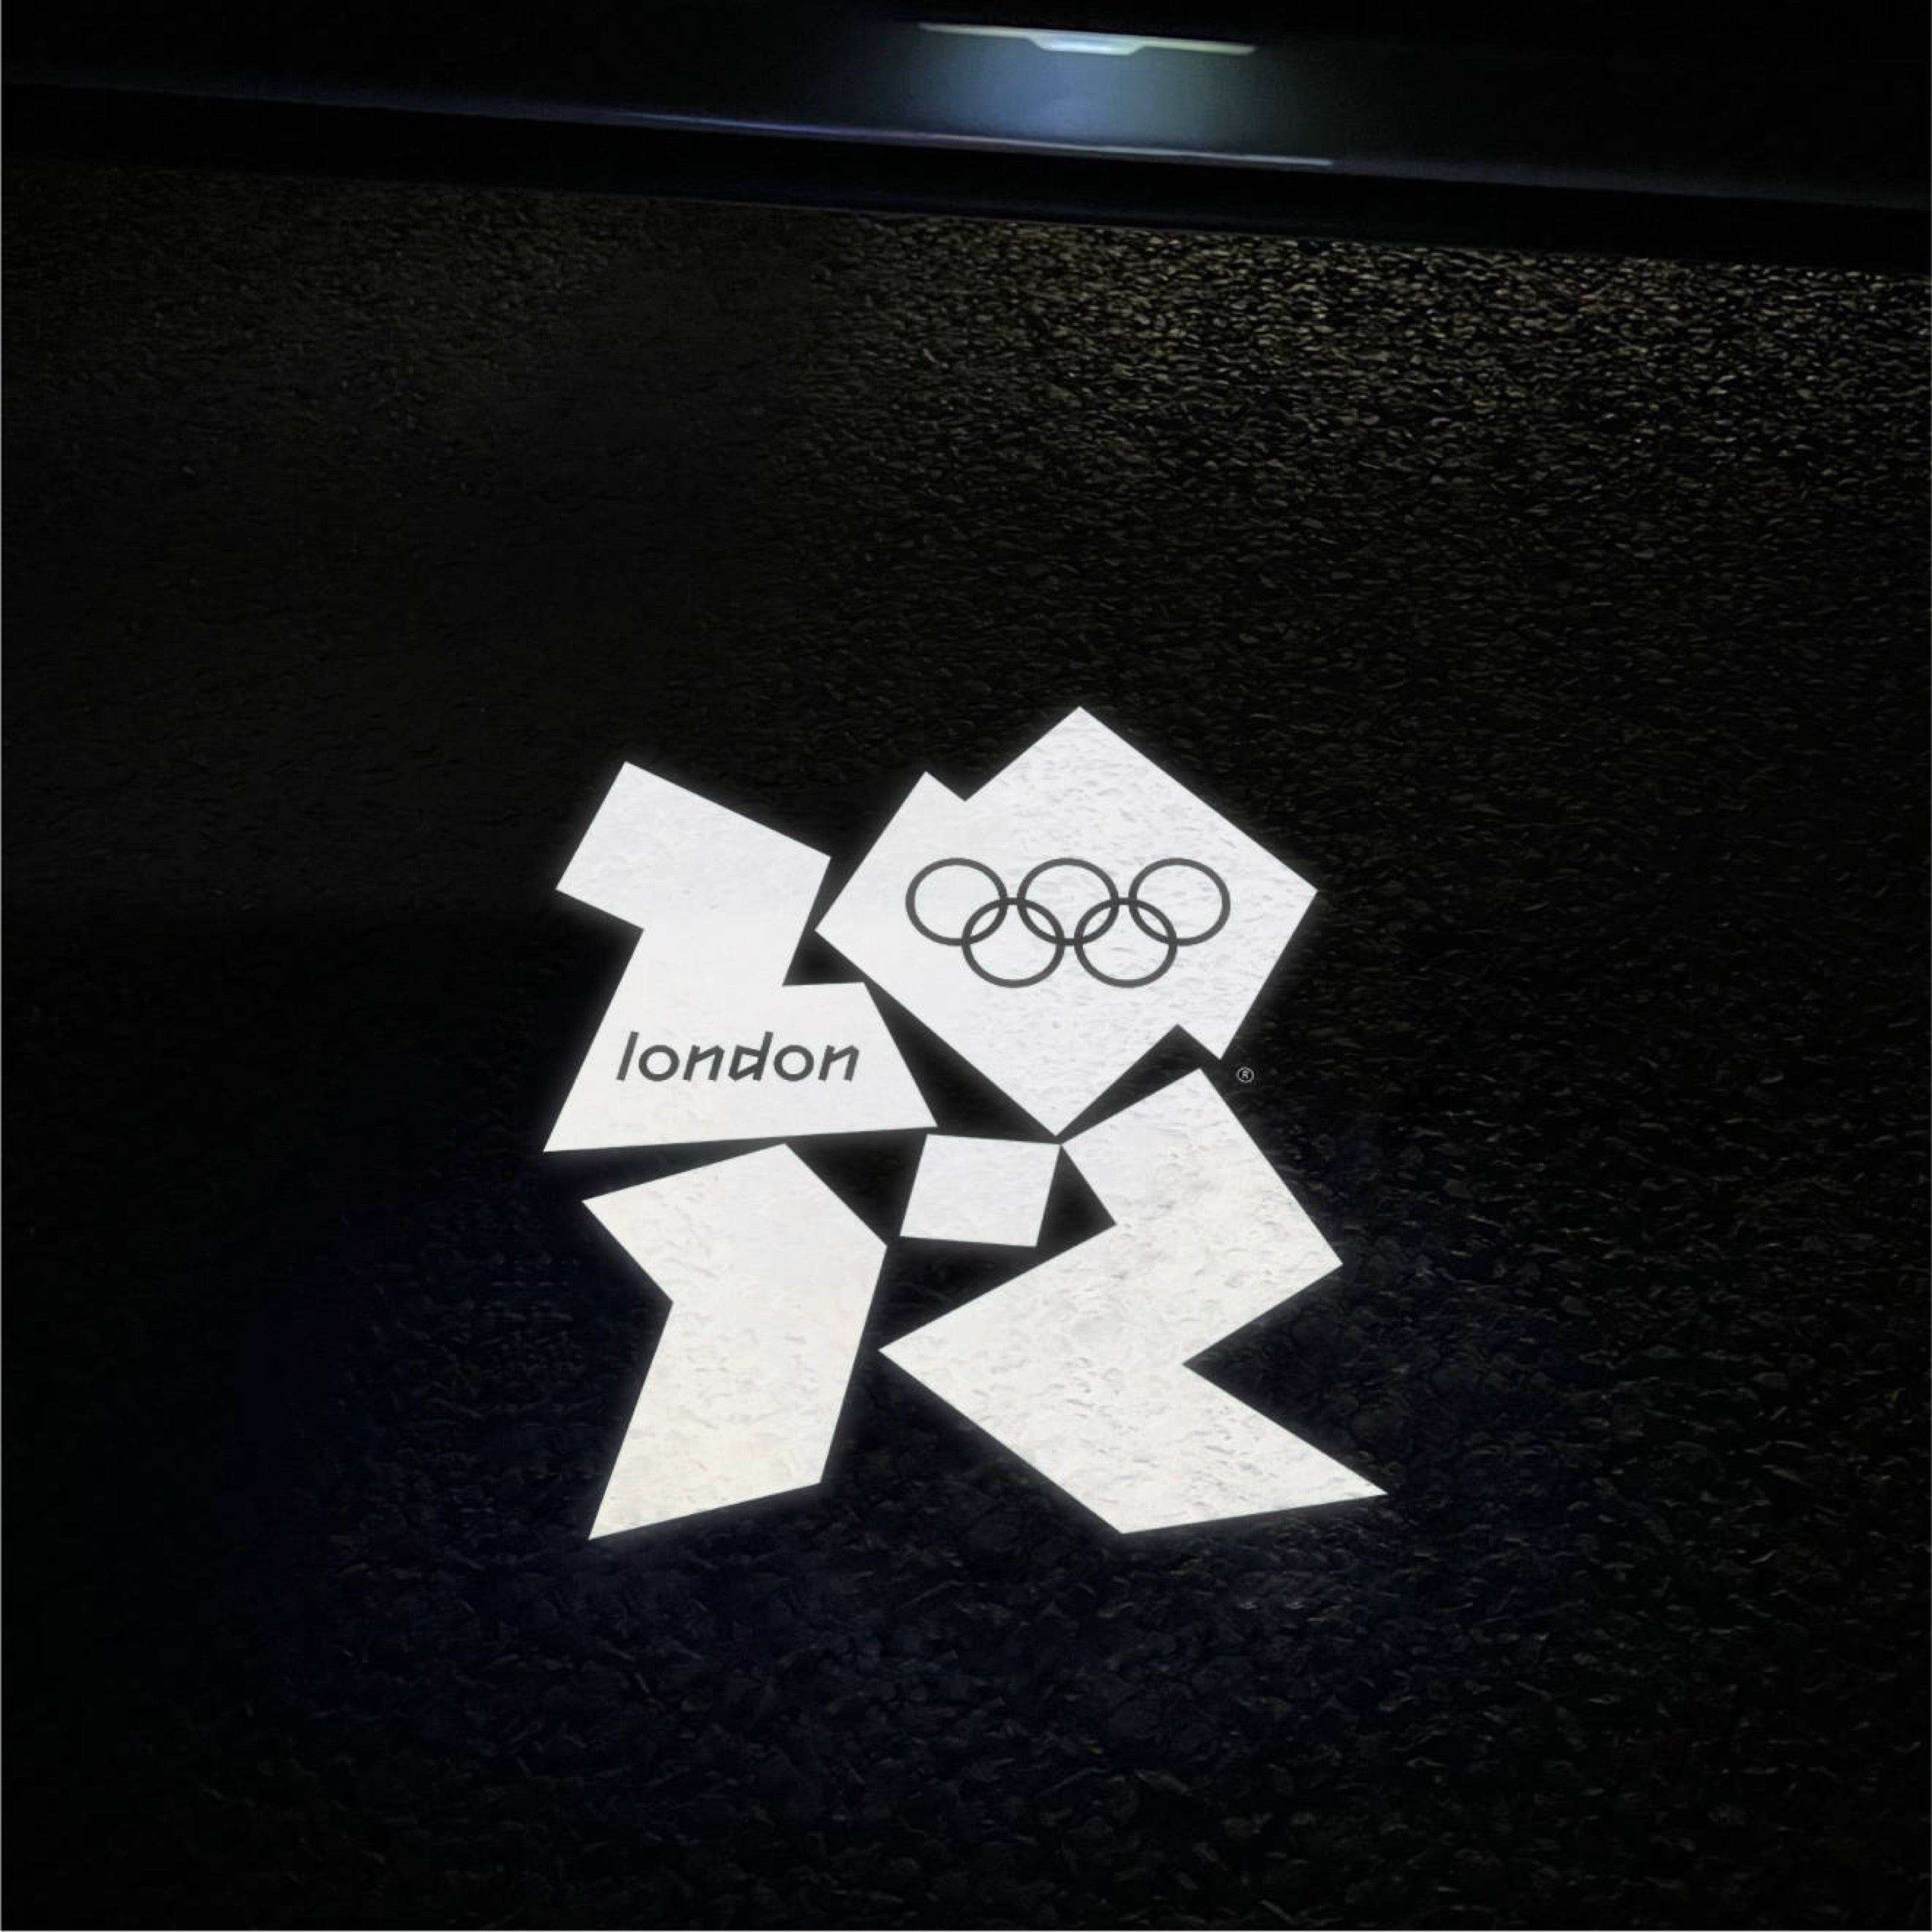 MINI LED Door Projector (Pair) - London 2012 Olympics